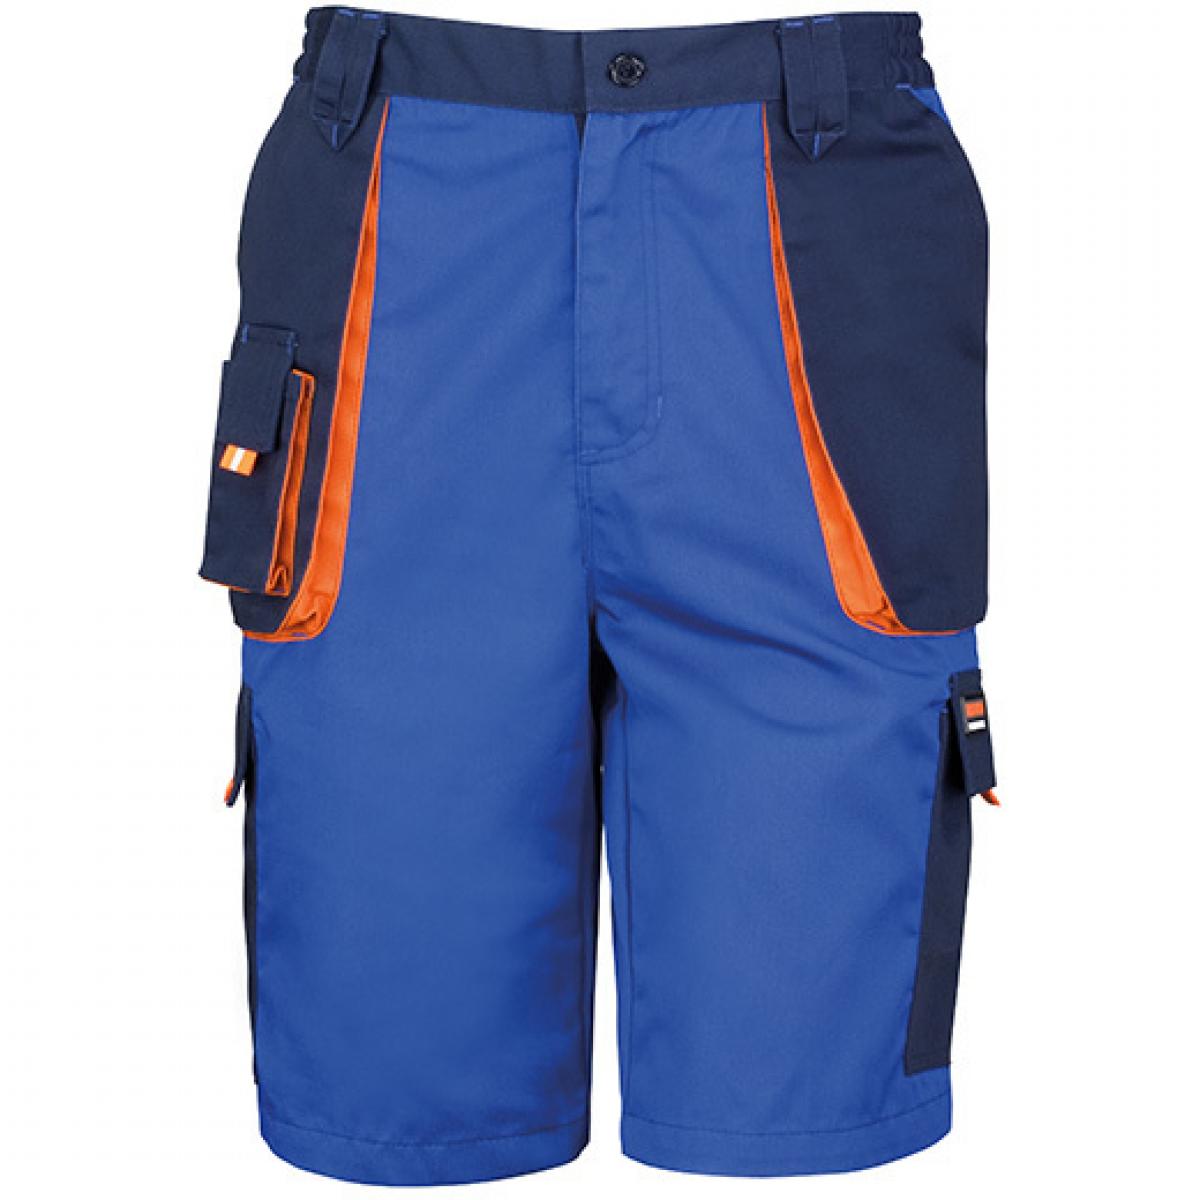 Hersteller: Result WORK-GUARD Herstellernummer: R319X Artikelbezeichnung: Herren Work-Guard Lite Shorts Farbe: Royal/Navy/Orange